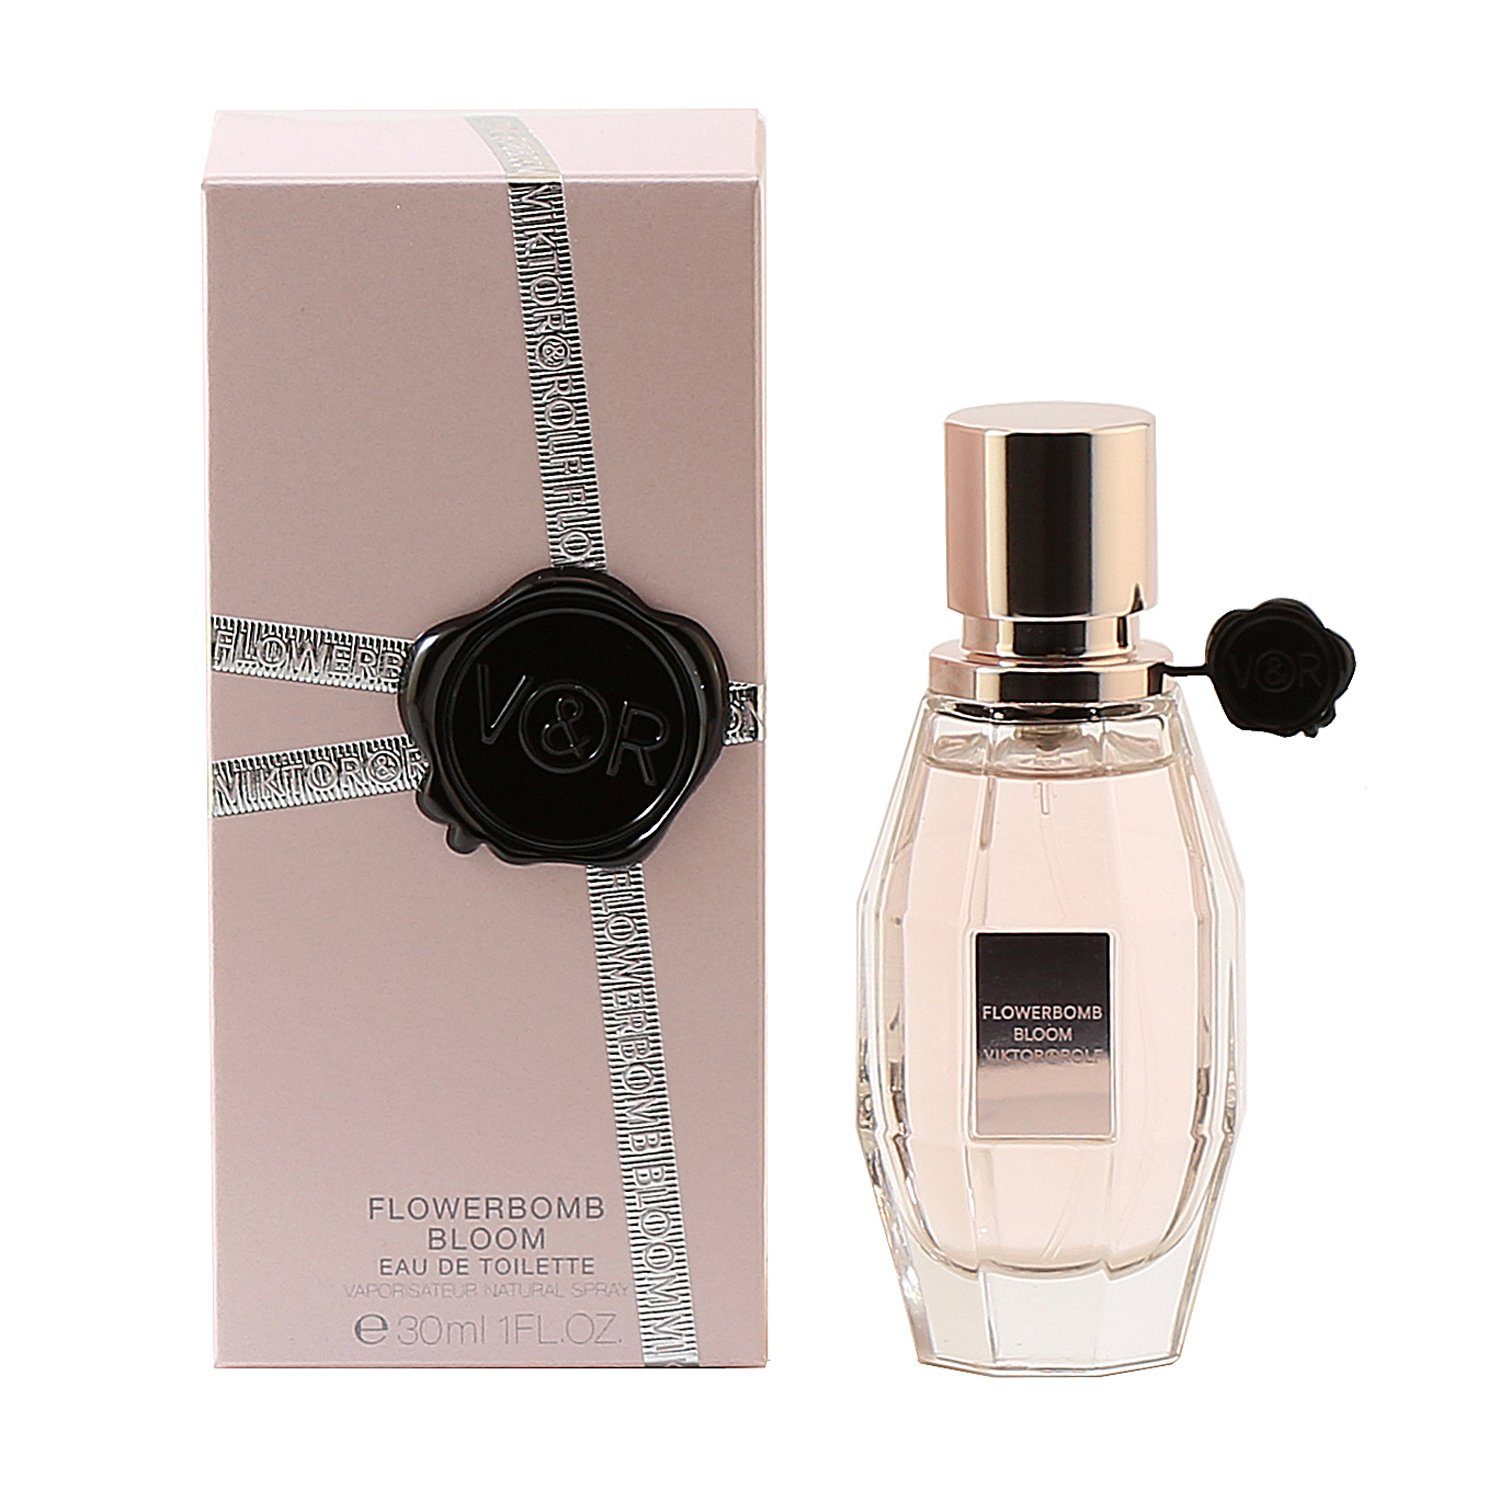 Perfume - FLOWERBOMB BLOOM FOR WOMEN - EAU DE TOILETTE SPRAY